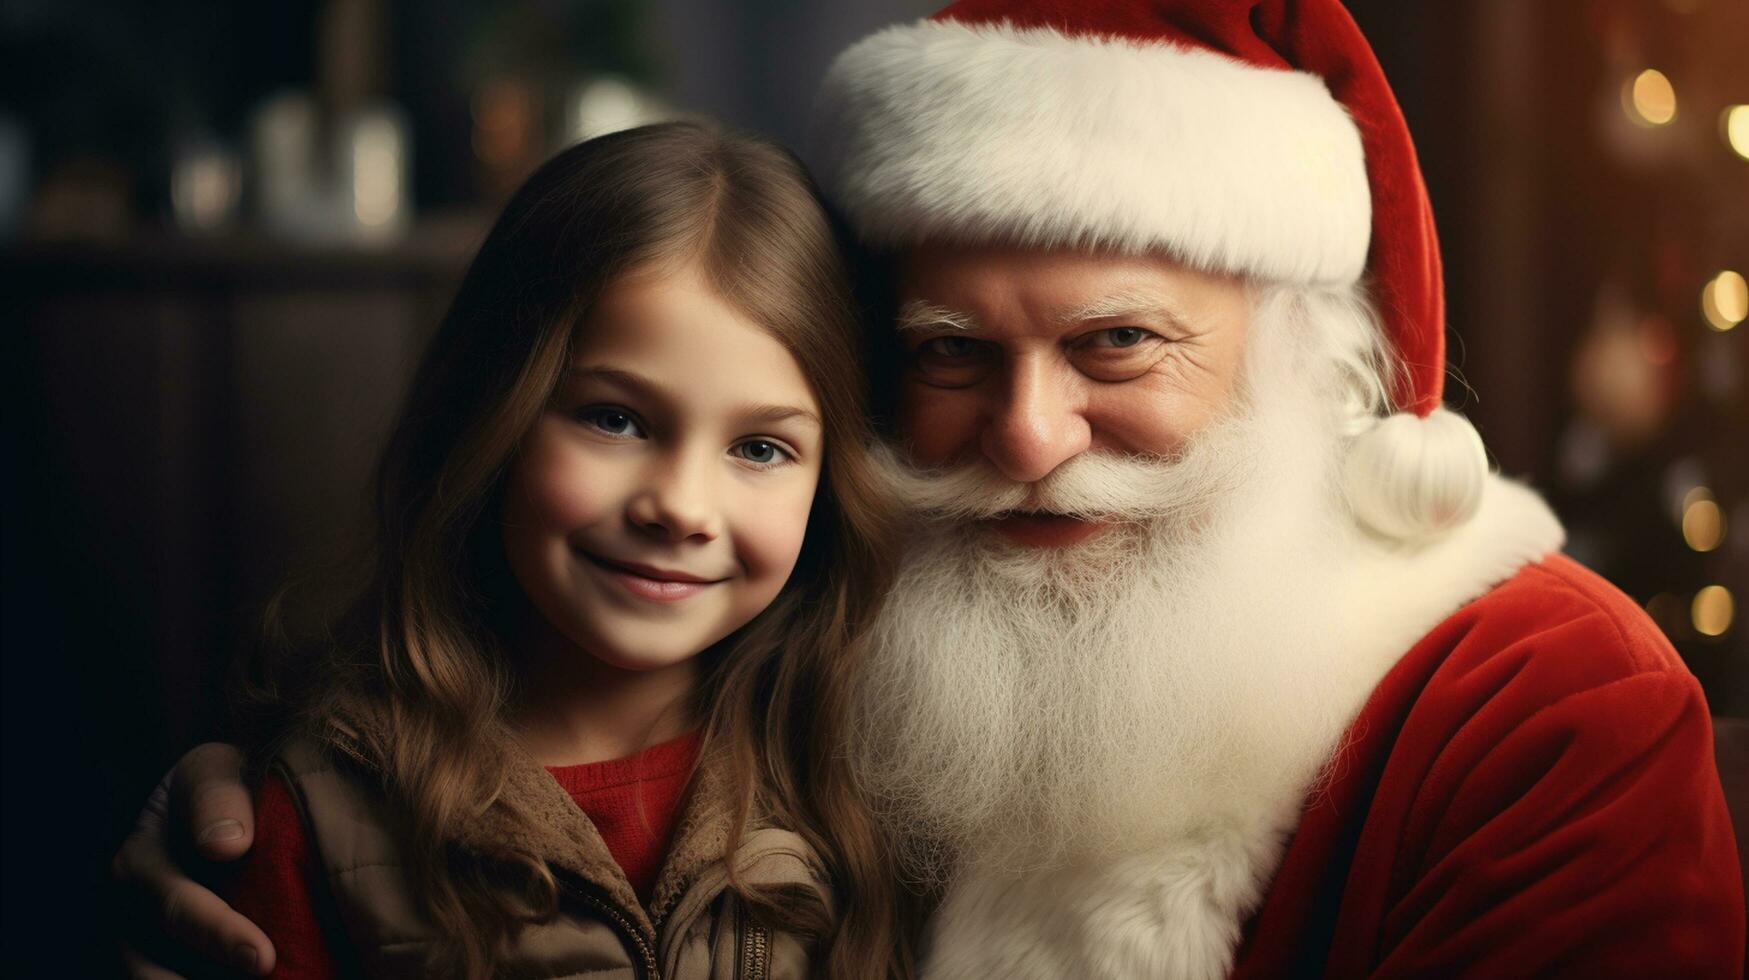 ai généré content enfant rencontrer Père Noël claus sur Noël photo